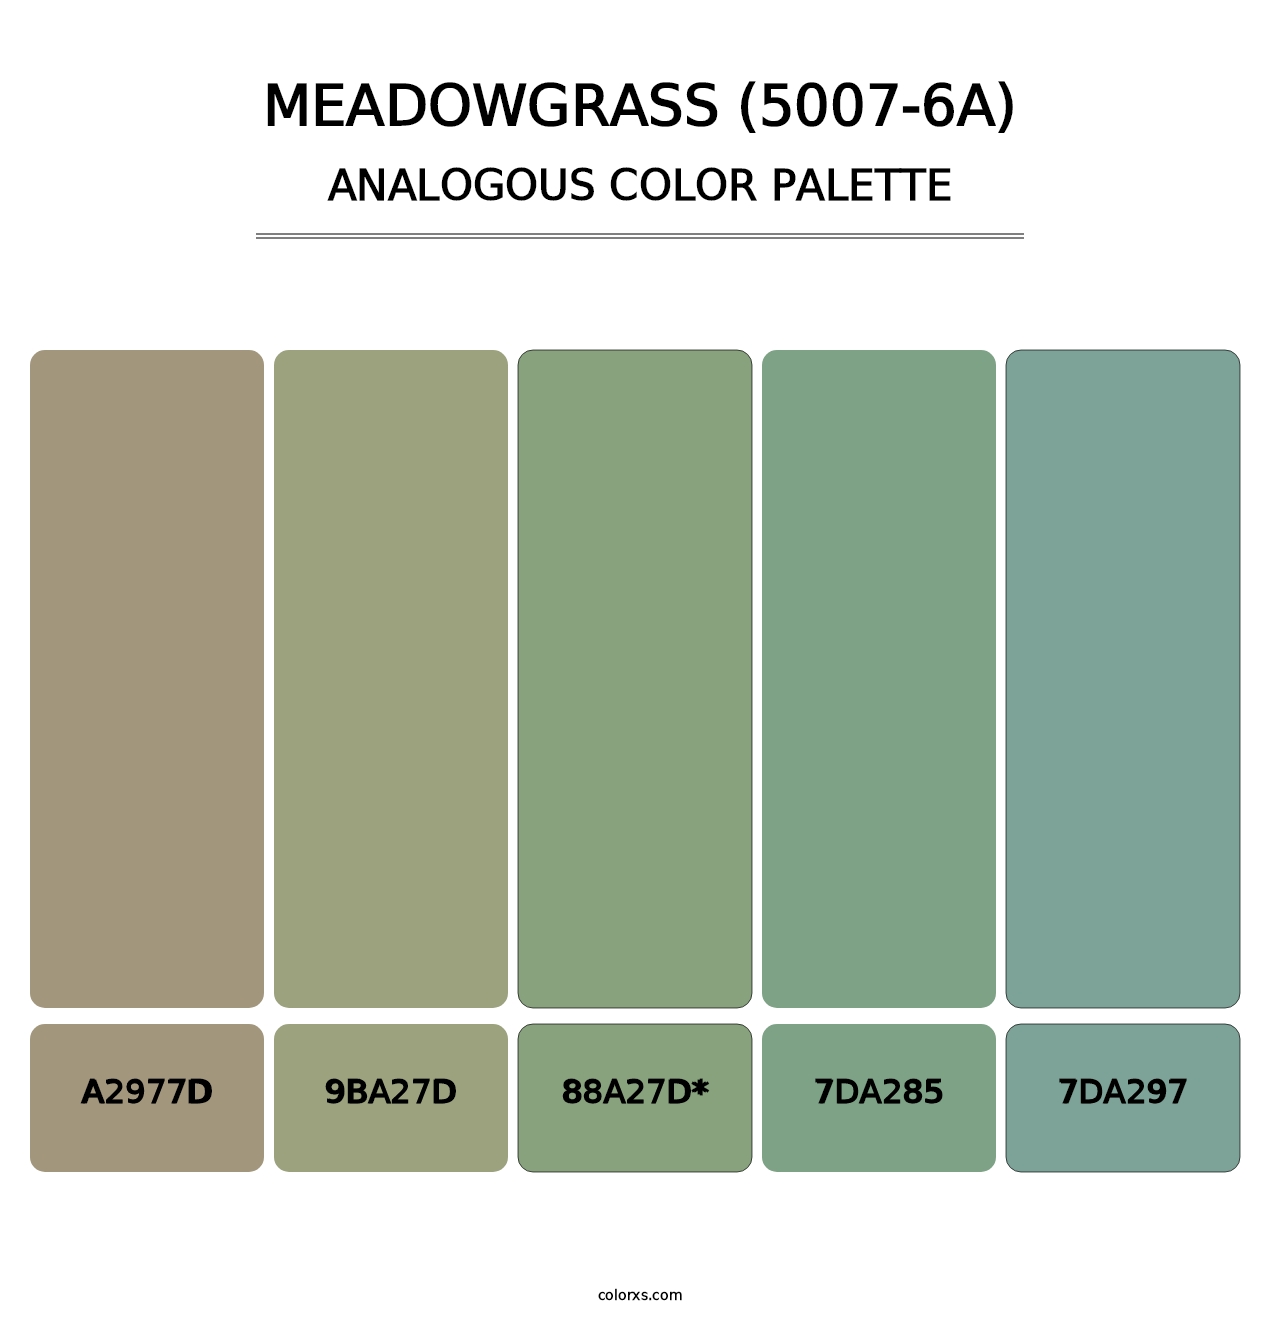 Meadowgrass (5007-6A) - Analogous Color Palette